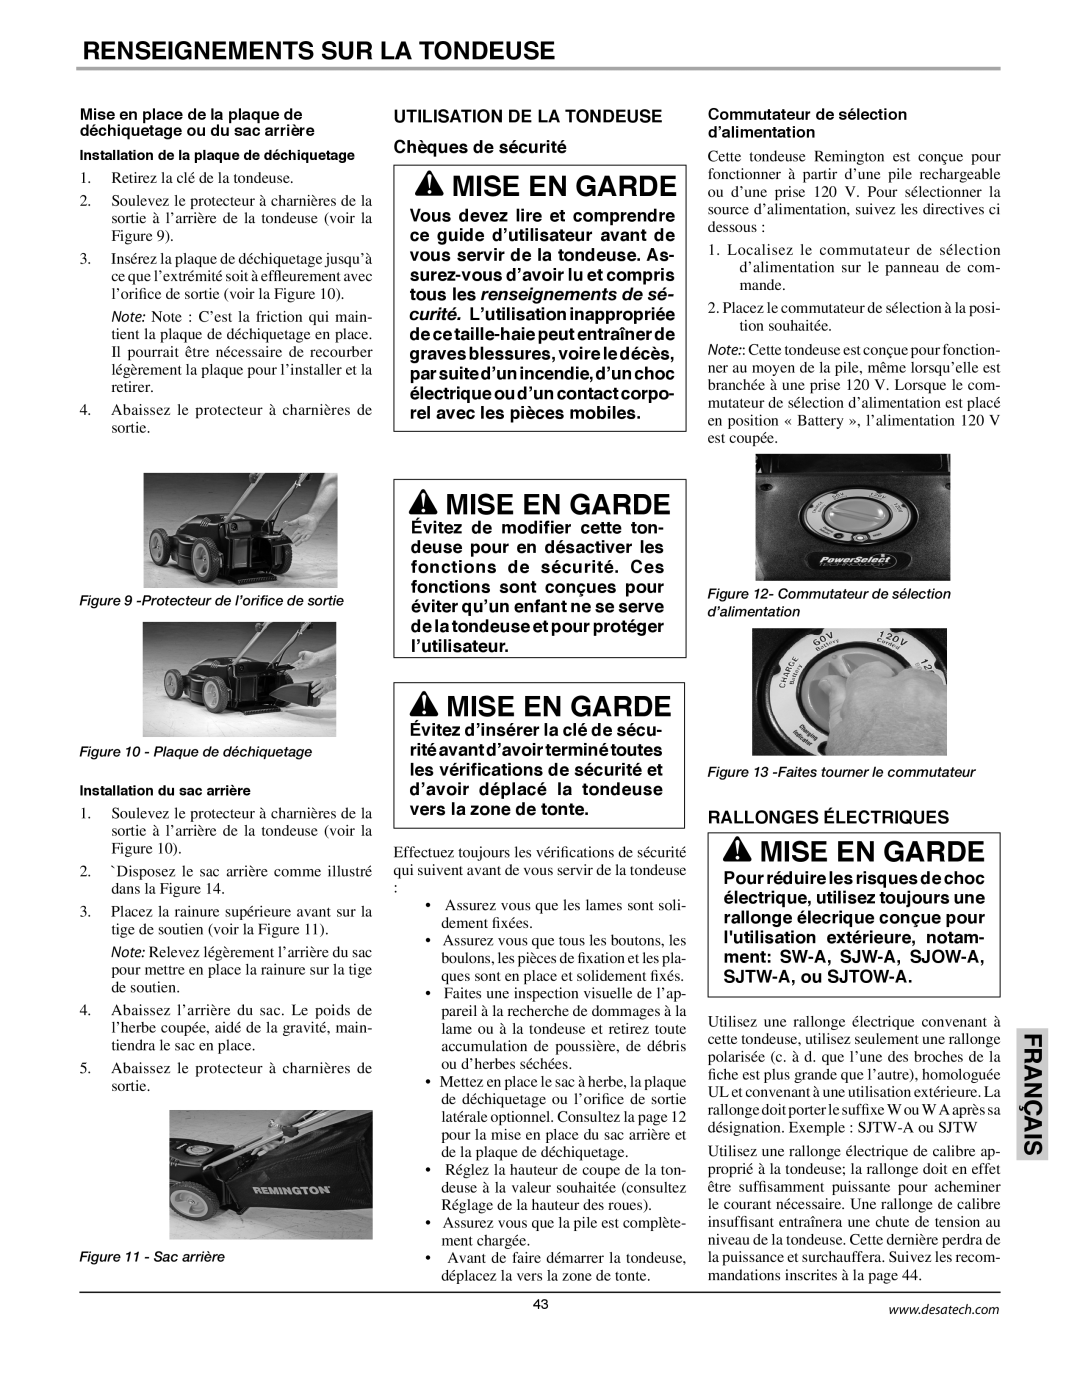 Remington Power Tools MPS6017A manual Mise En Garde, Renseignements Sur La Tondeuse, Français, Rallonges Électriques 